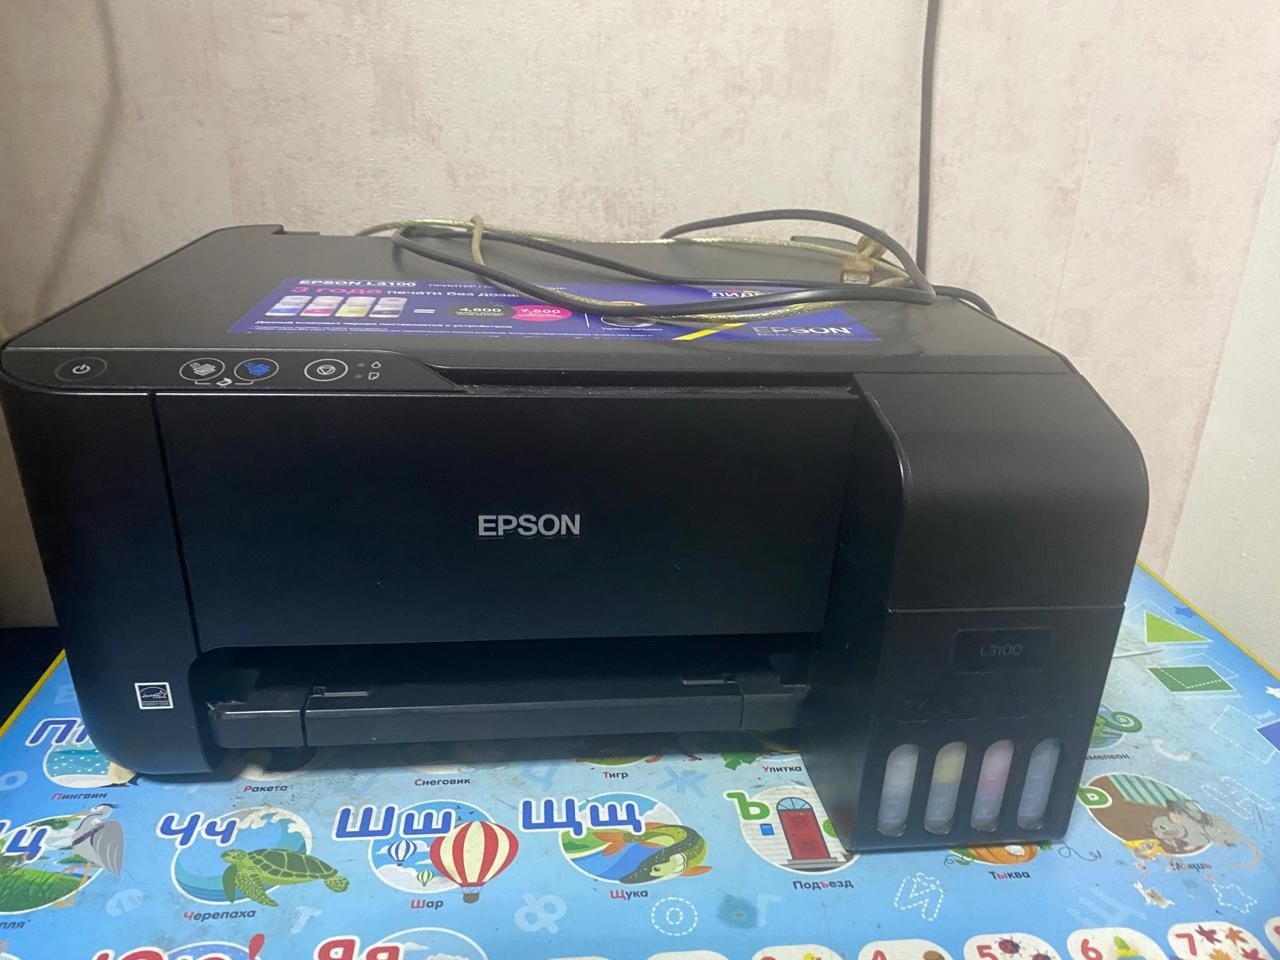 Принтер Epson L3100